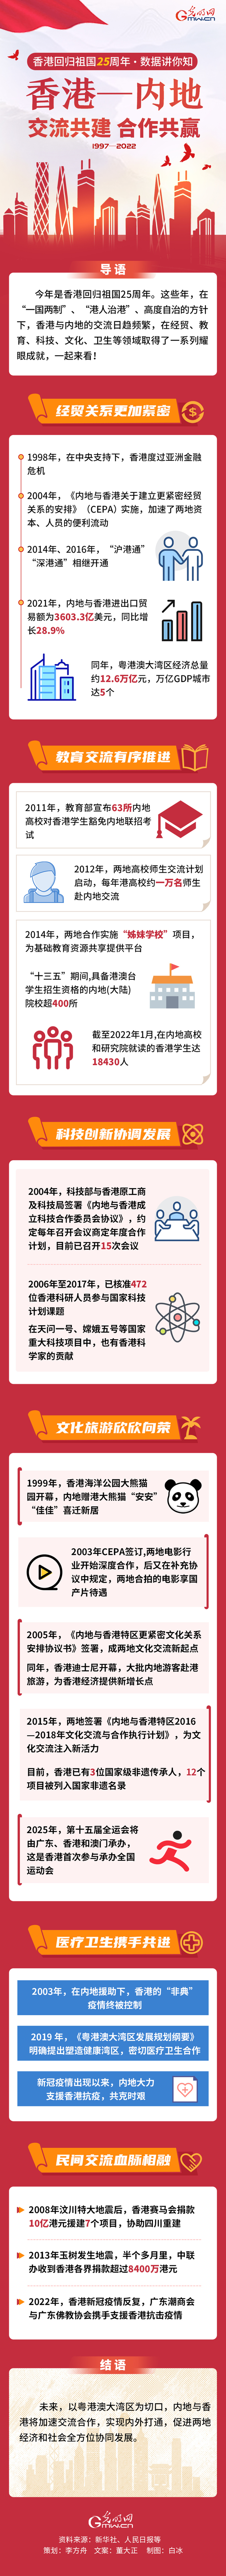 【香港回歸祖國25週年�數據講你知】香港—內地 交流共建 合作共贏